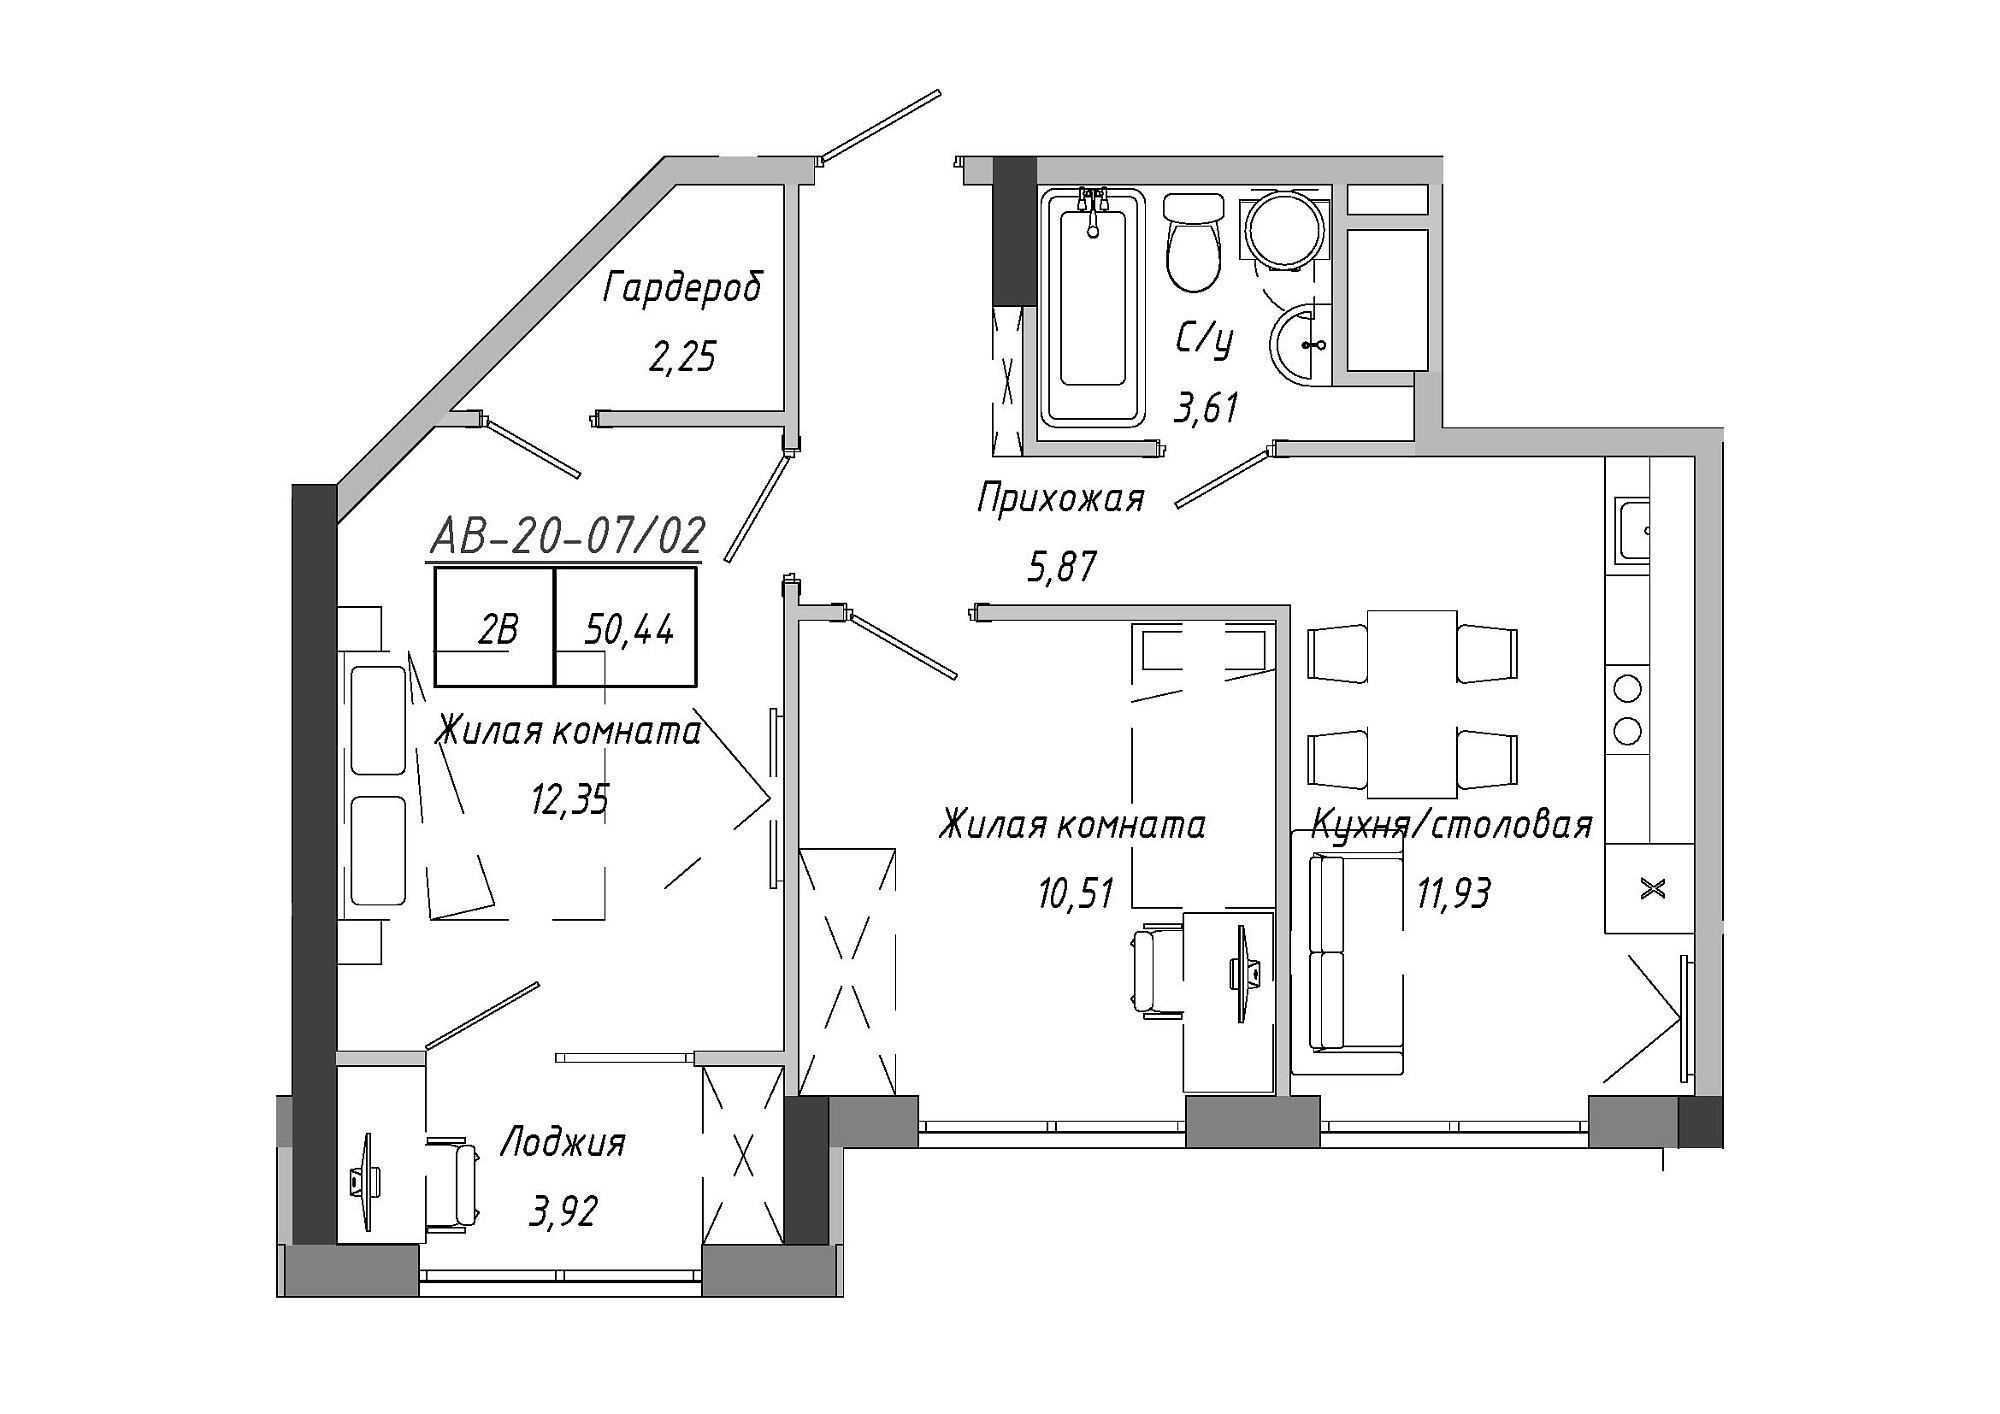 Планировка 2-к квартира площей 50.33м2, AB-20-07/00002.